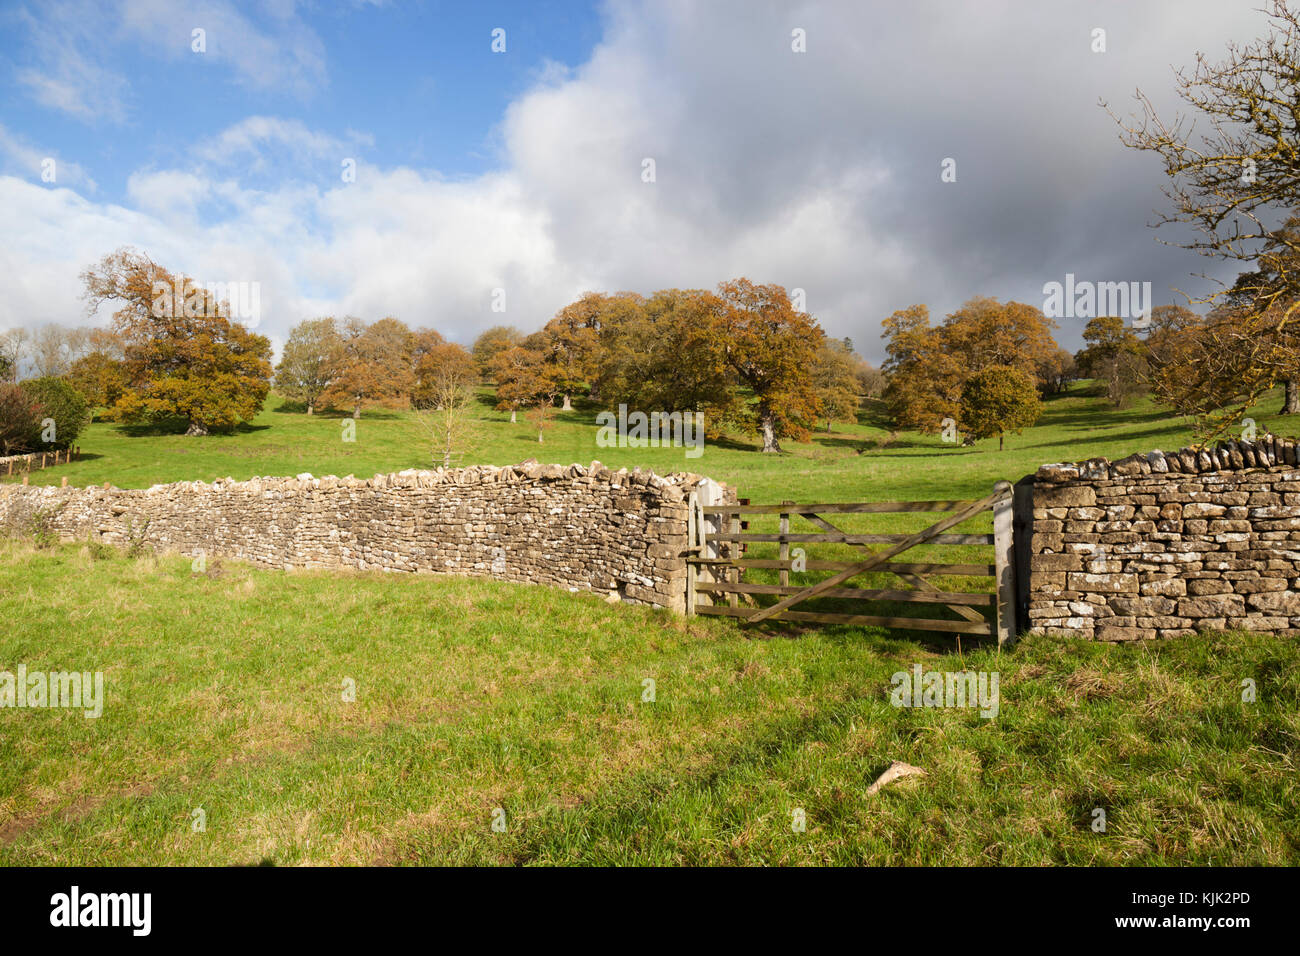 Cotswold secco muro in pietra e in legno cinque bar porta con i campi di erba e alberi d'autunno dietro, Stowell, Cotswolds, Gloucestershire, England, Regno Unito Foto Stock